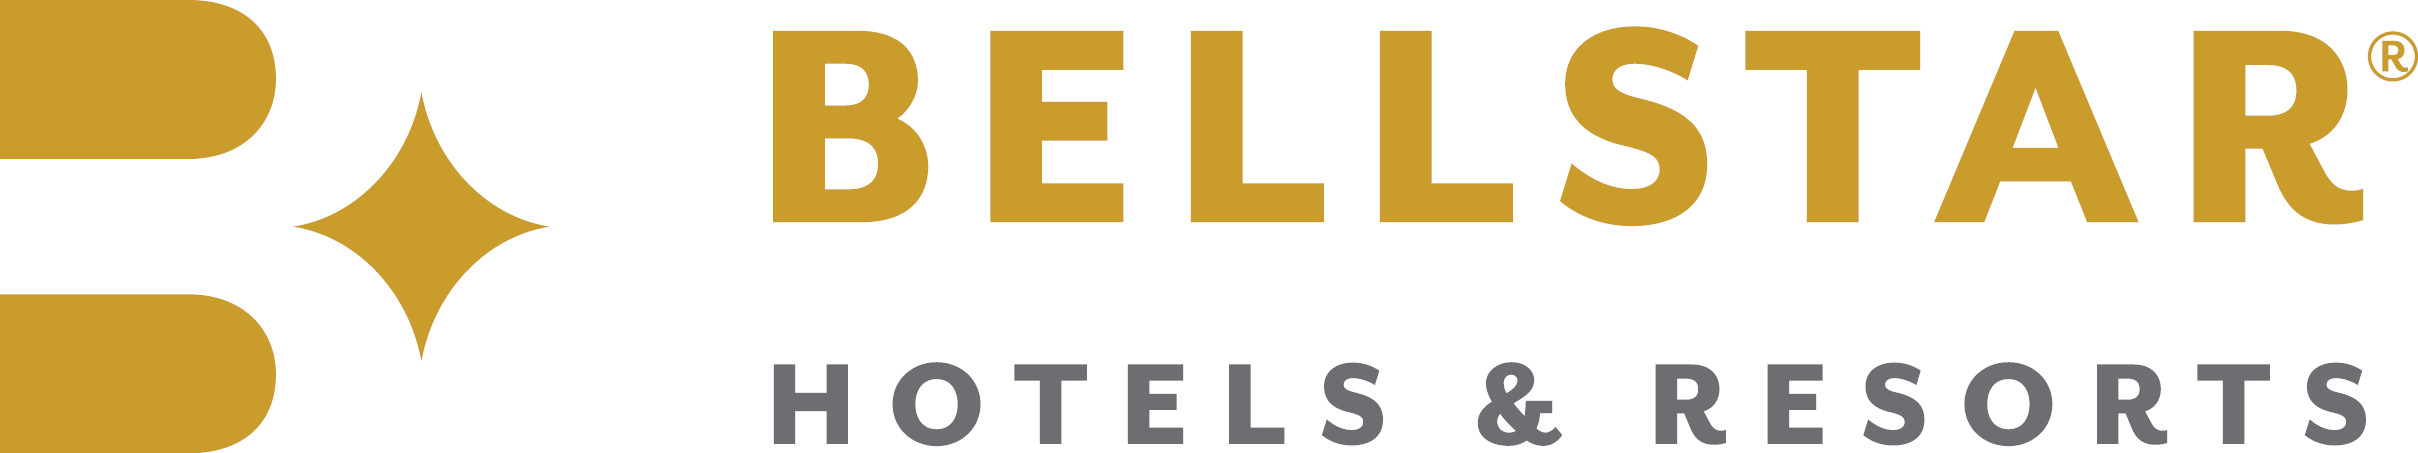 Bellstar Hotels & Re